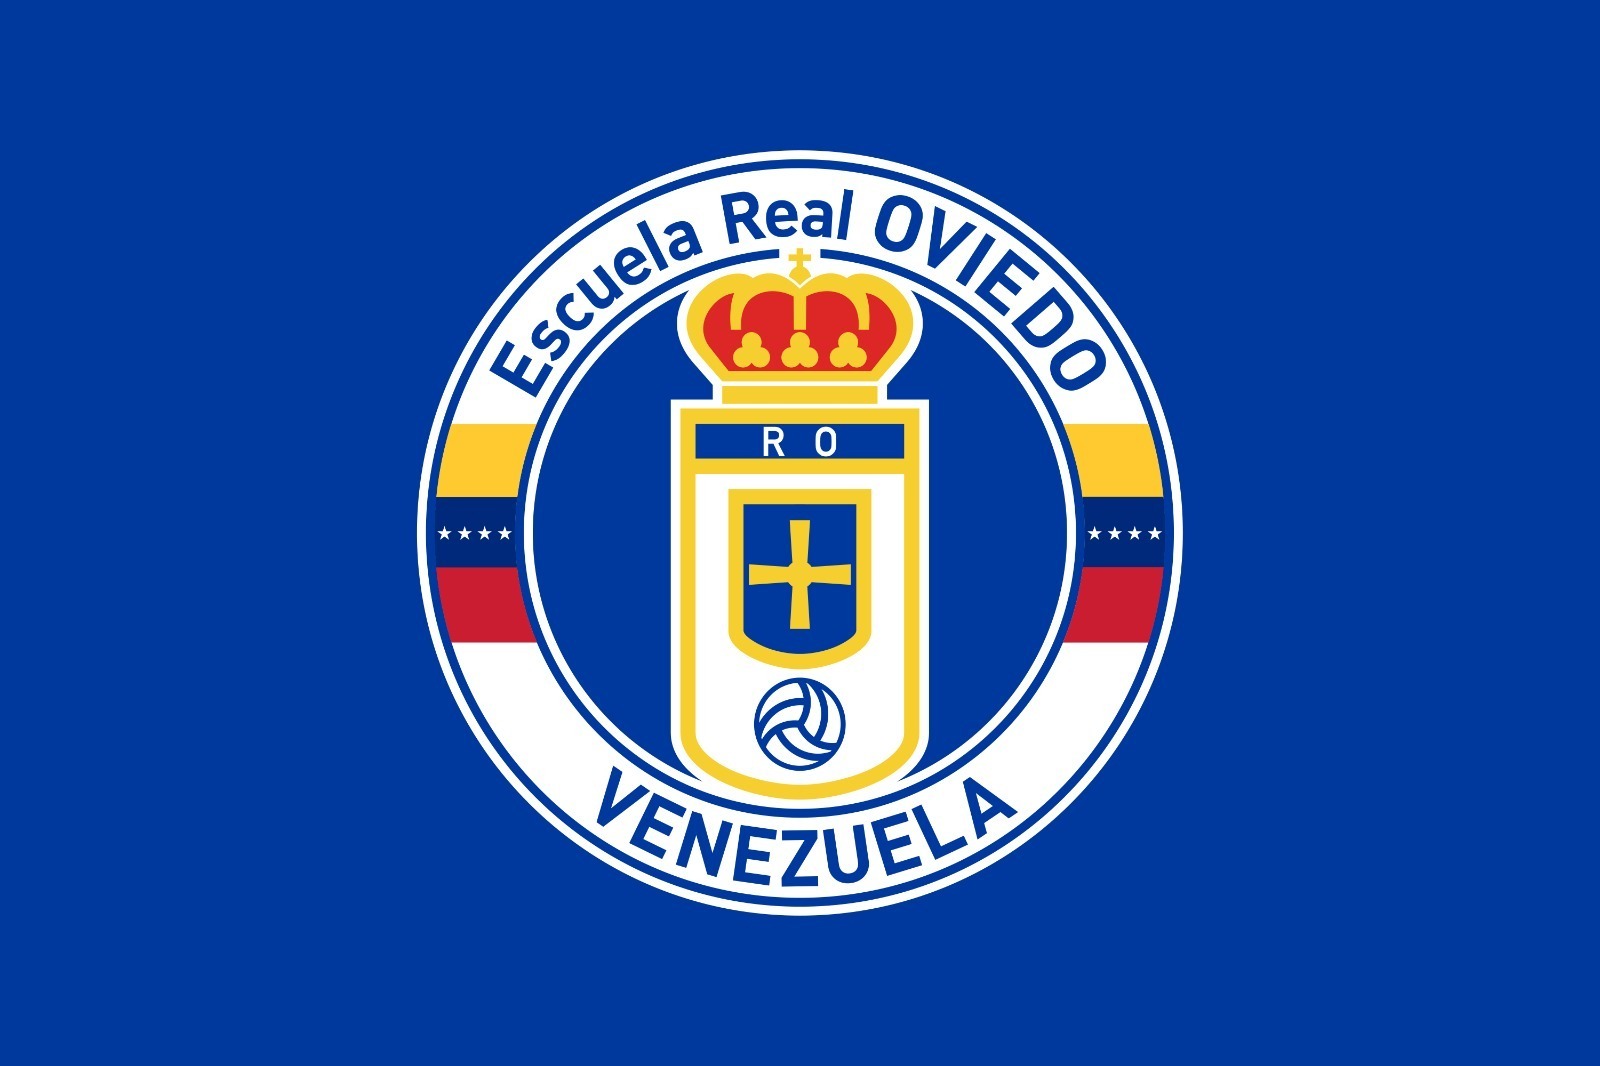 Escuela Real Oviedo Venezuela is Born, Real Oviedo